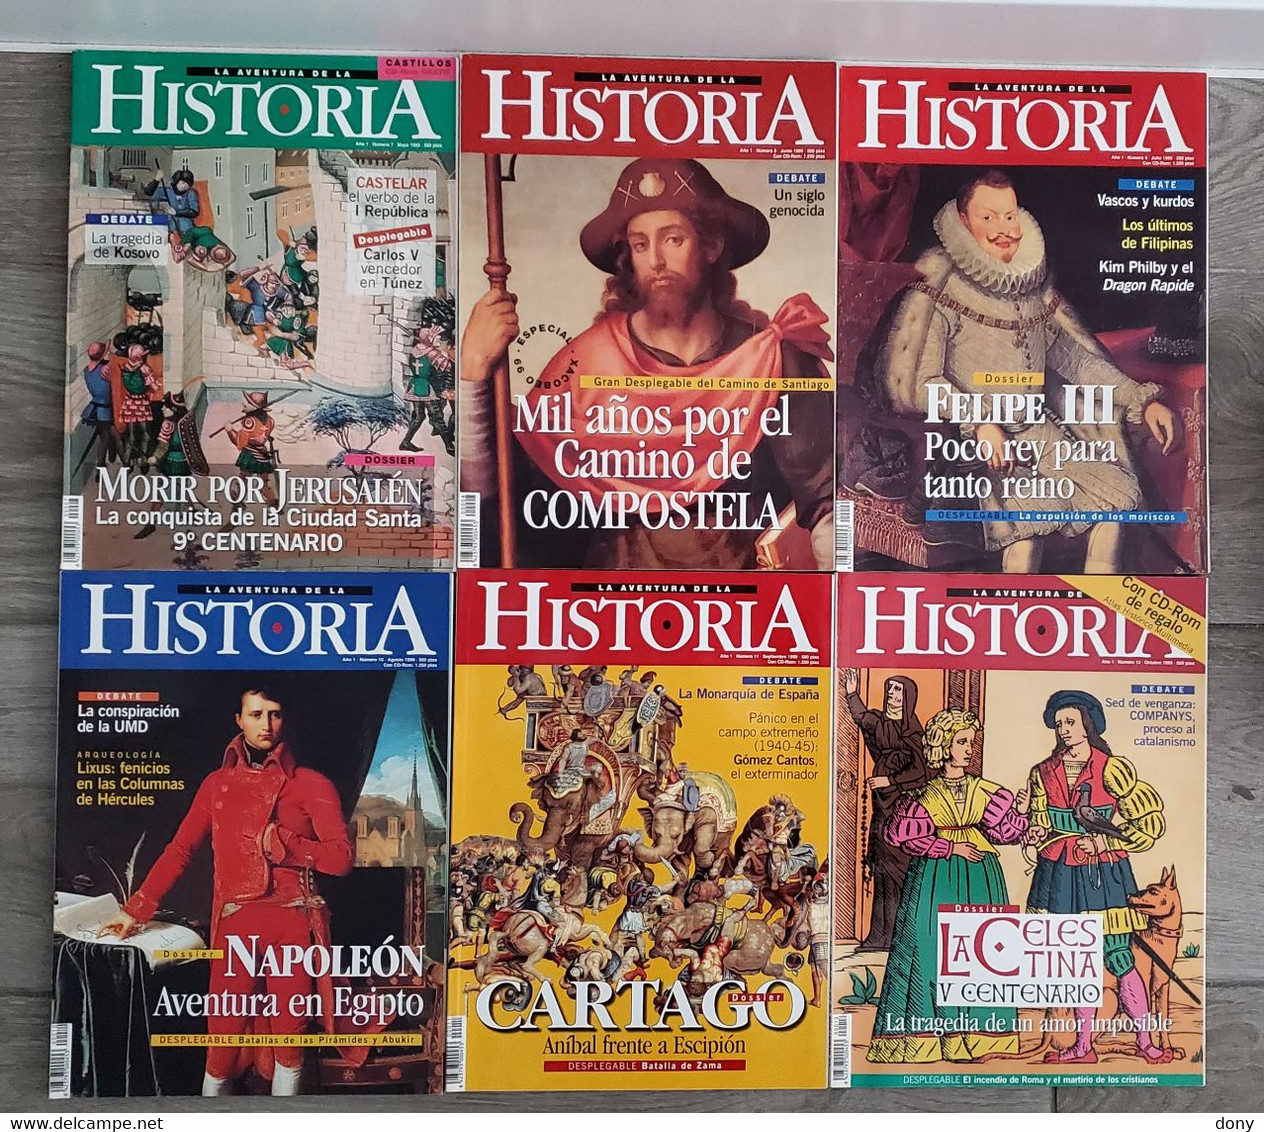 Revistas La Aventura De La Historia. Numero 1 - [4] Themes